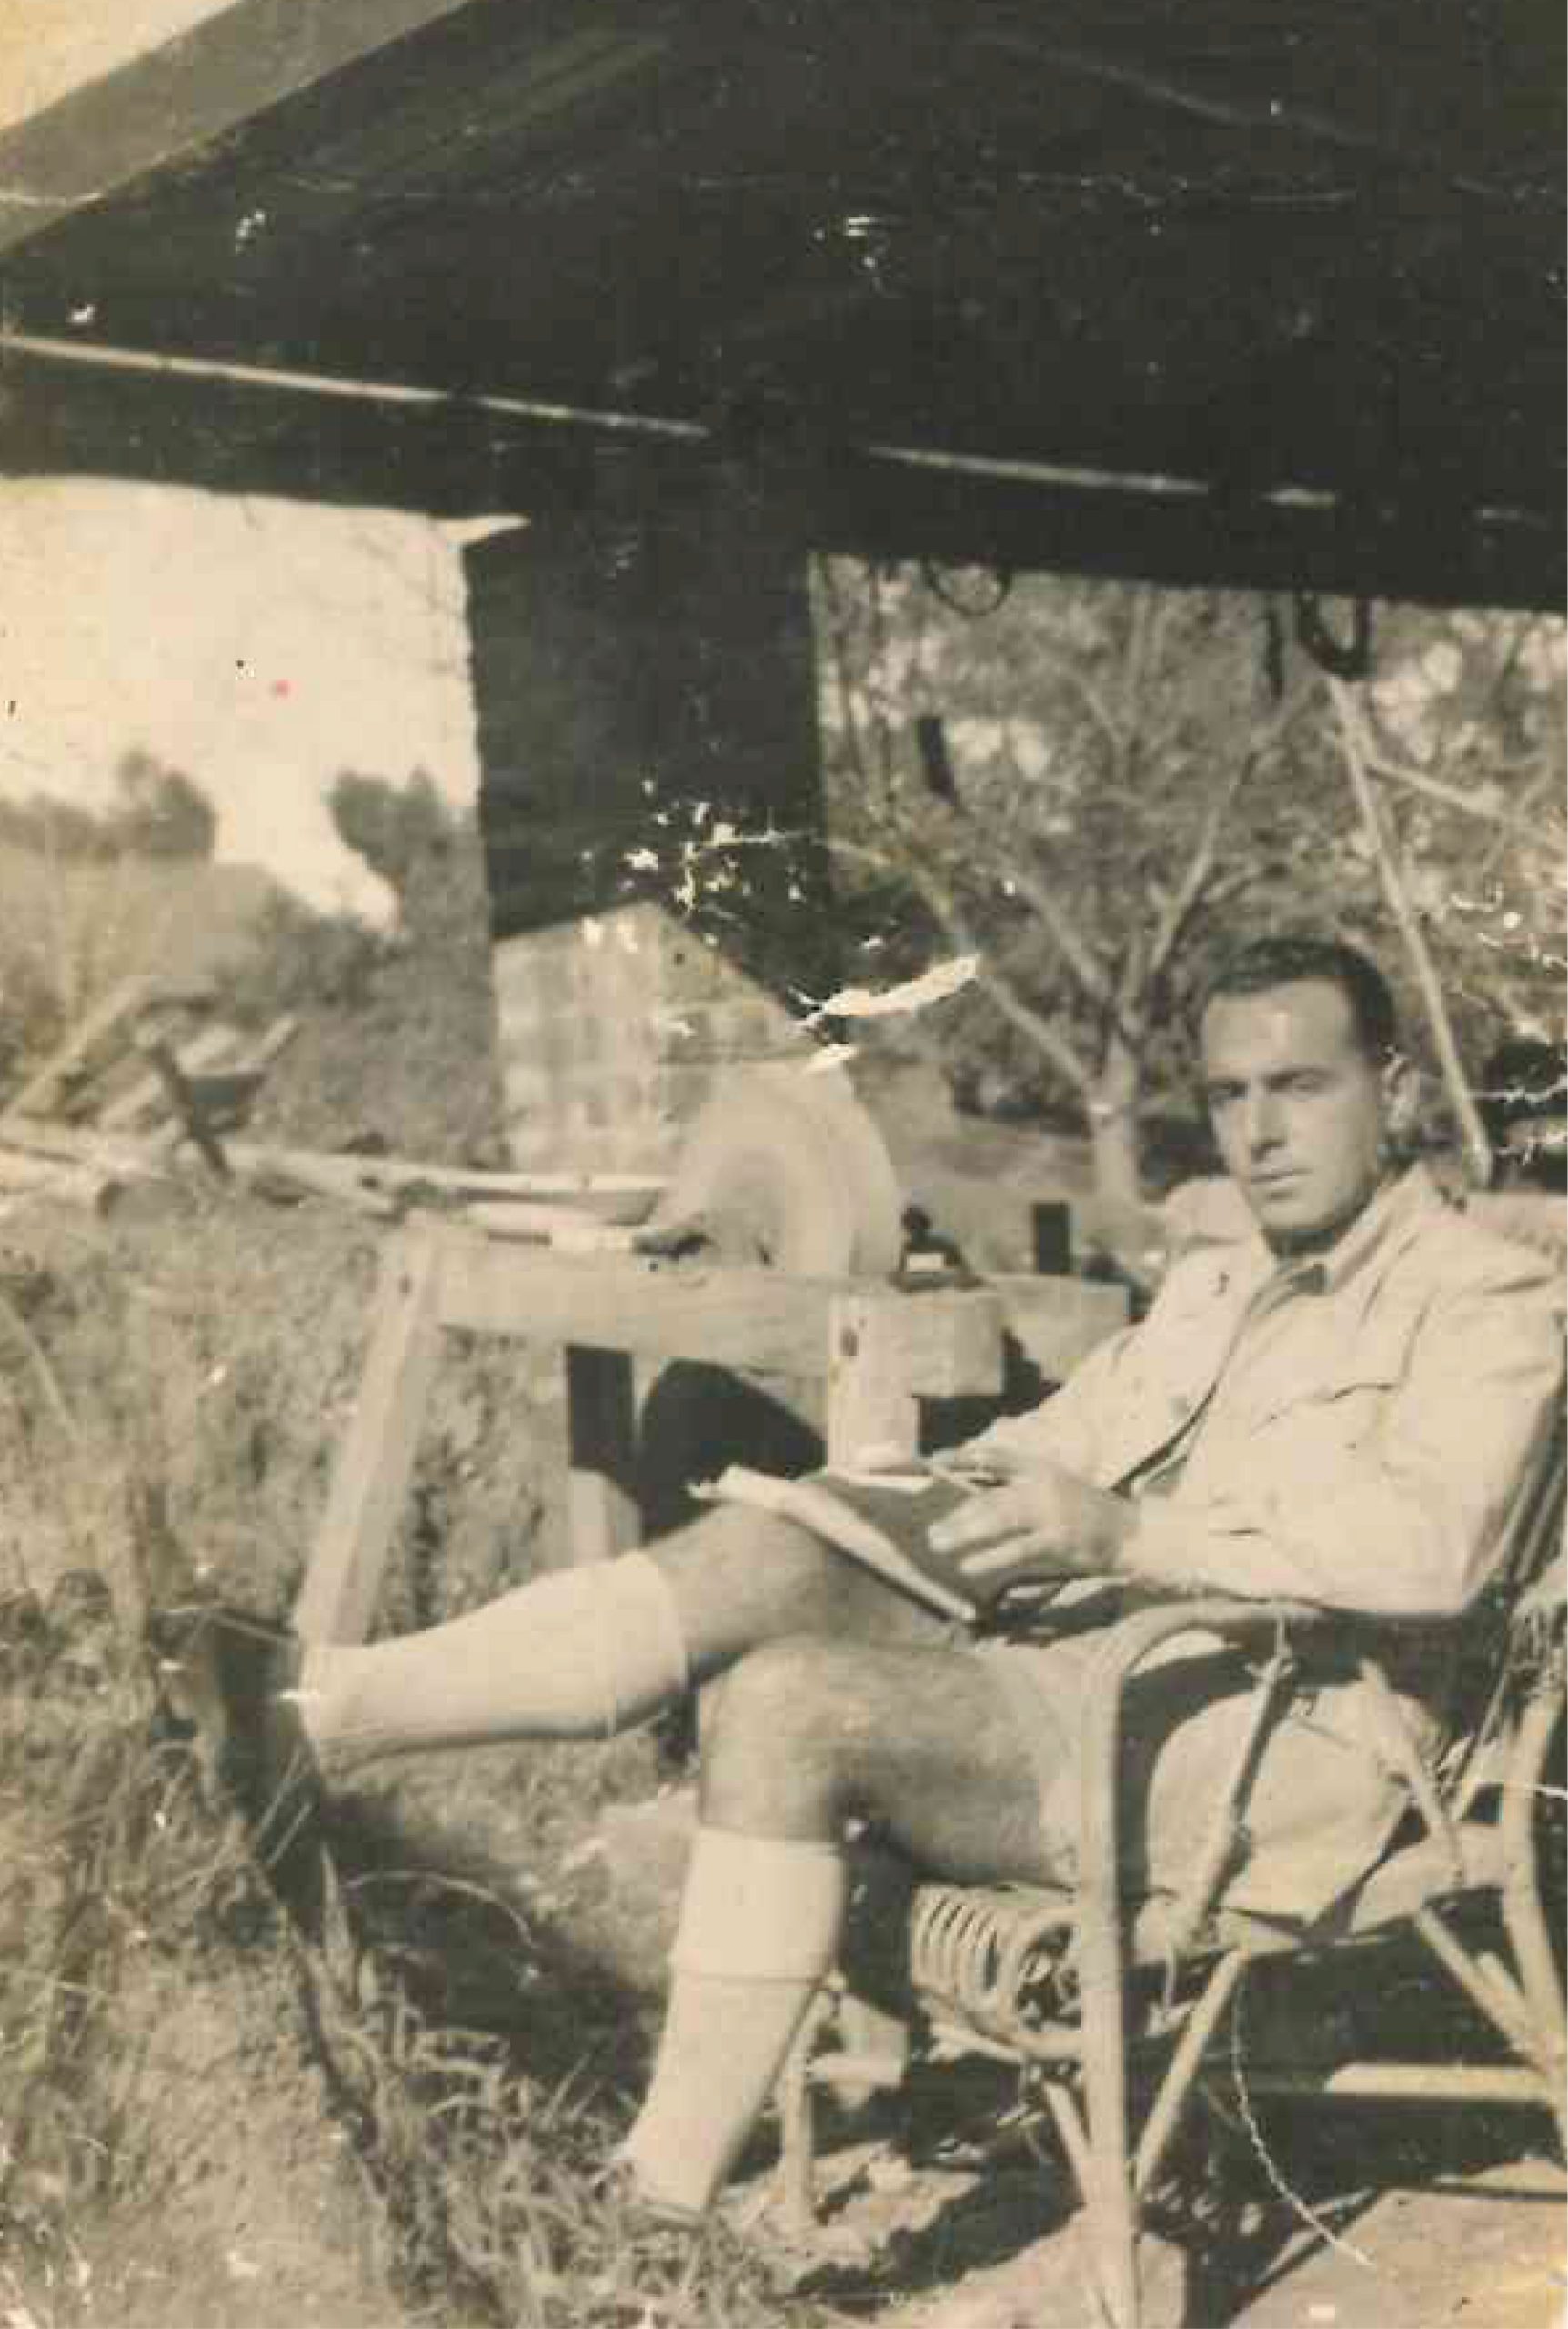 At Diemersfontein around 1944